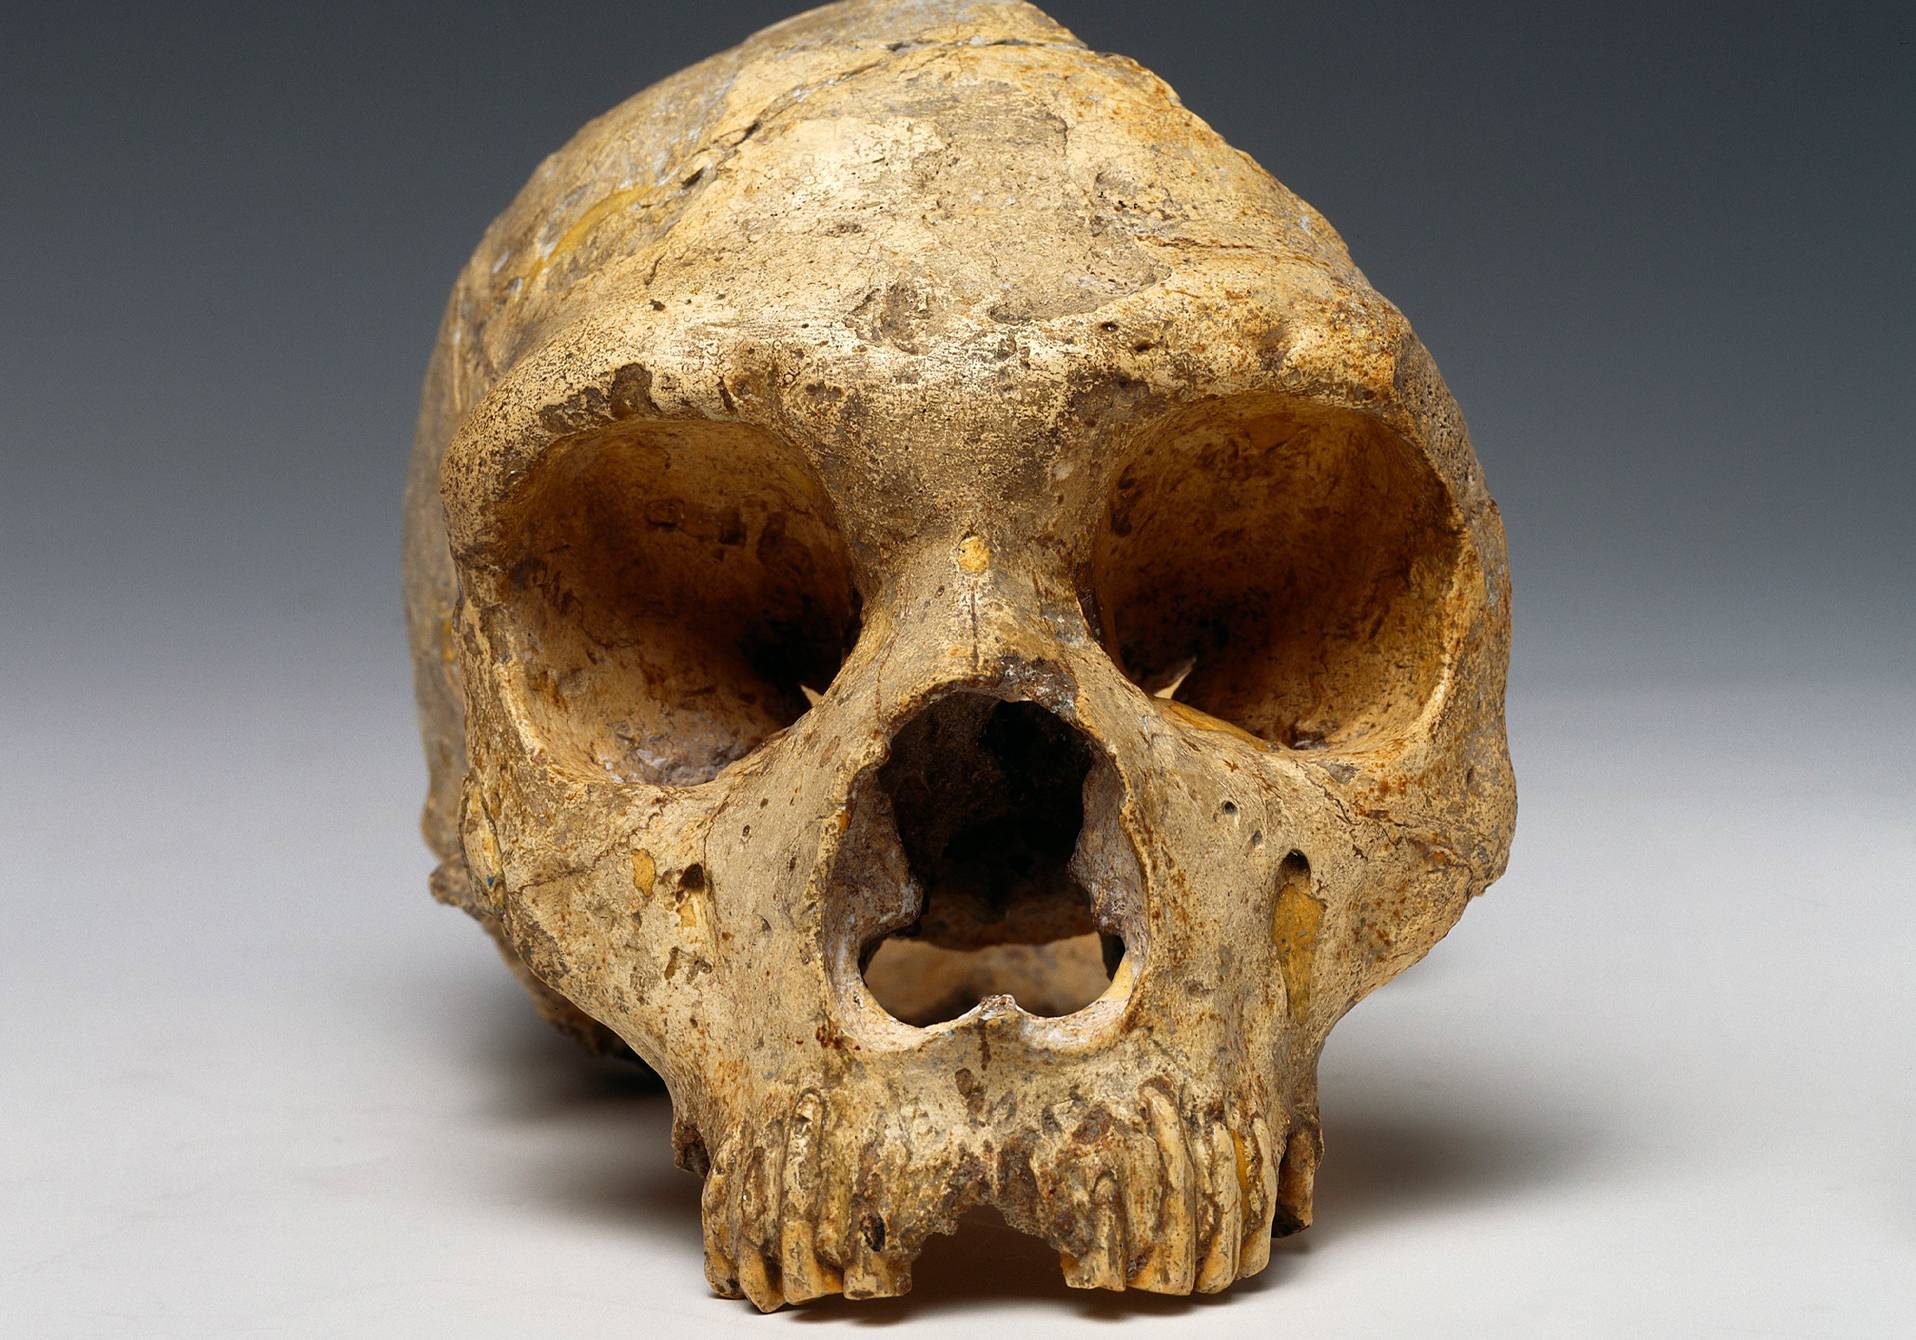 Crâne de néanderta- lienne, carrière de Forbes, Gibraltar, entre –50 000 et –100 000 ans.